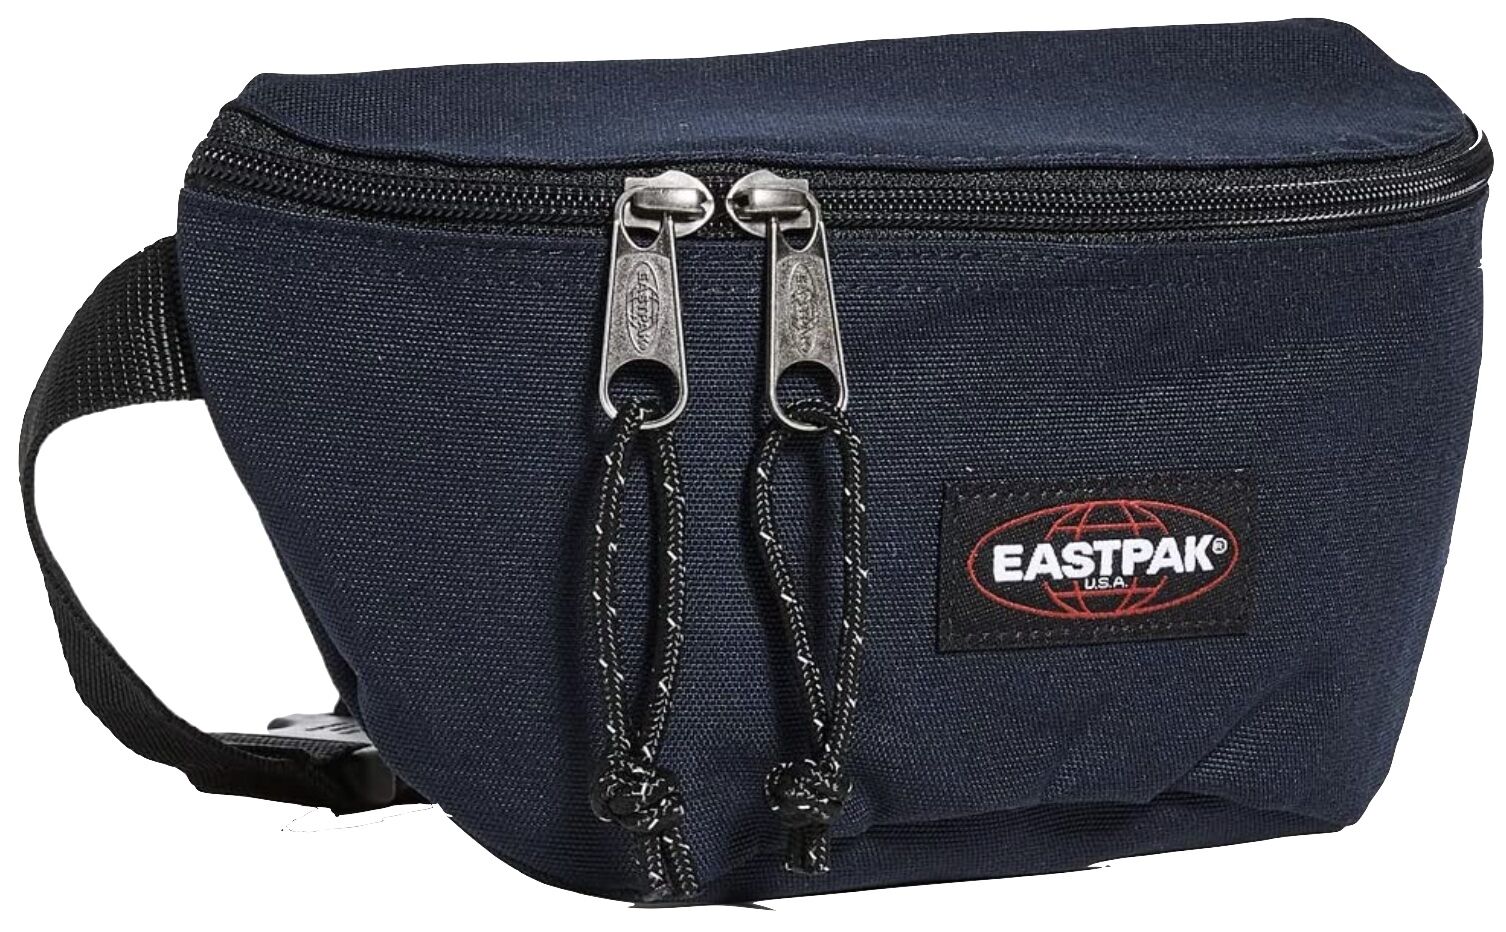 Eastpak cross body bag